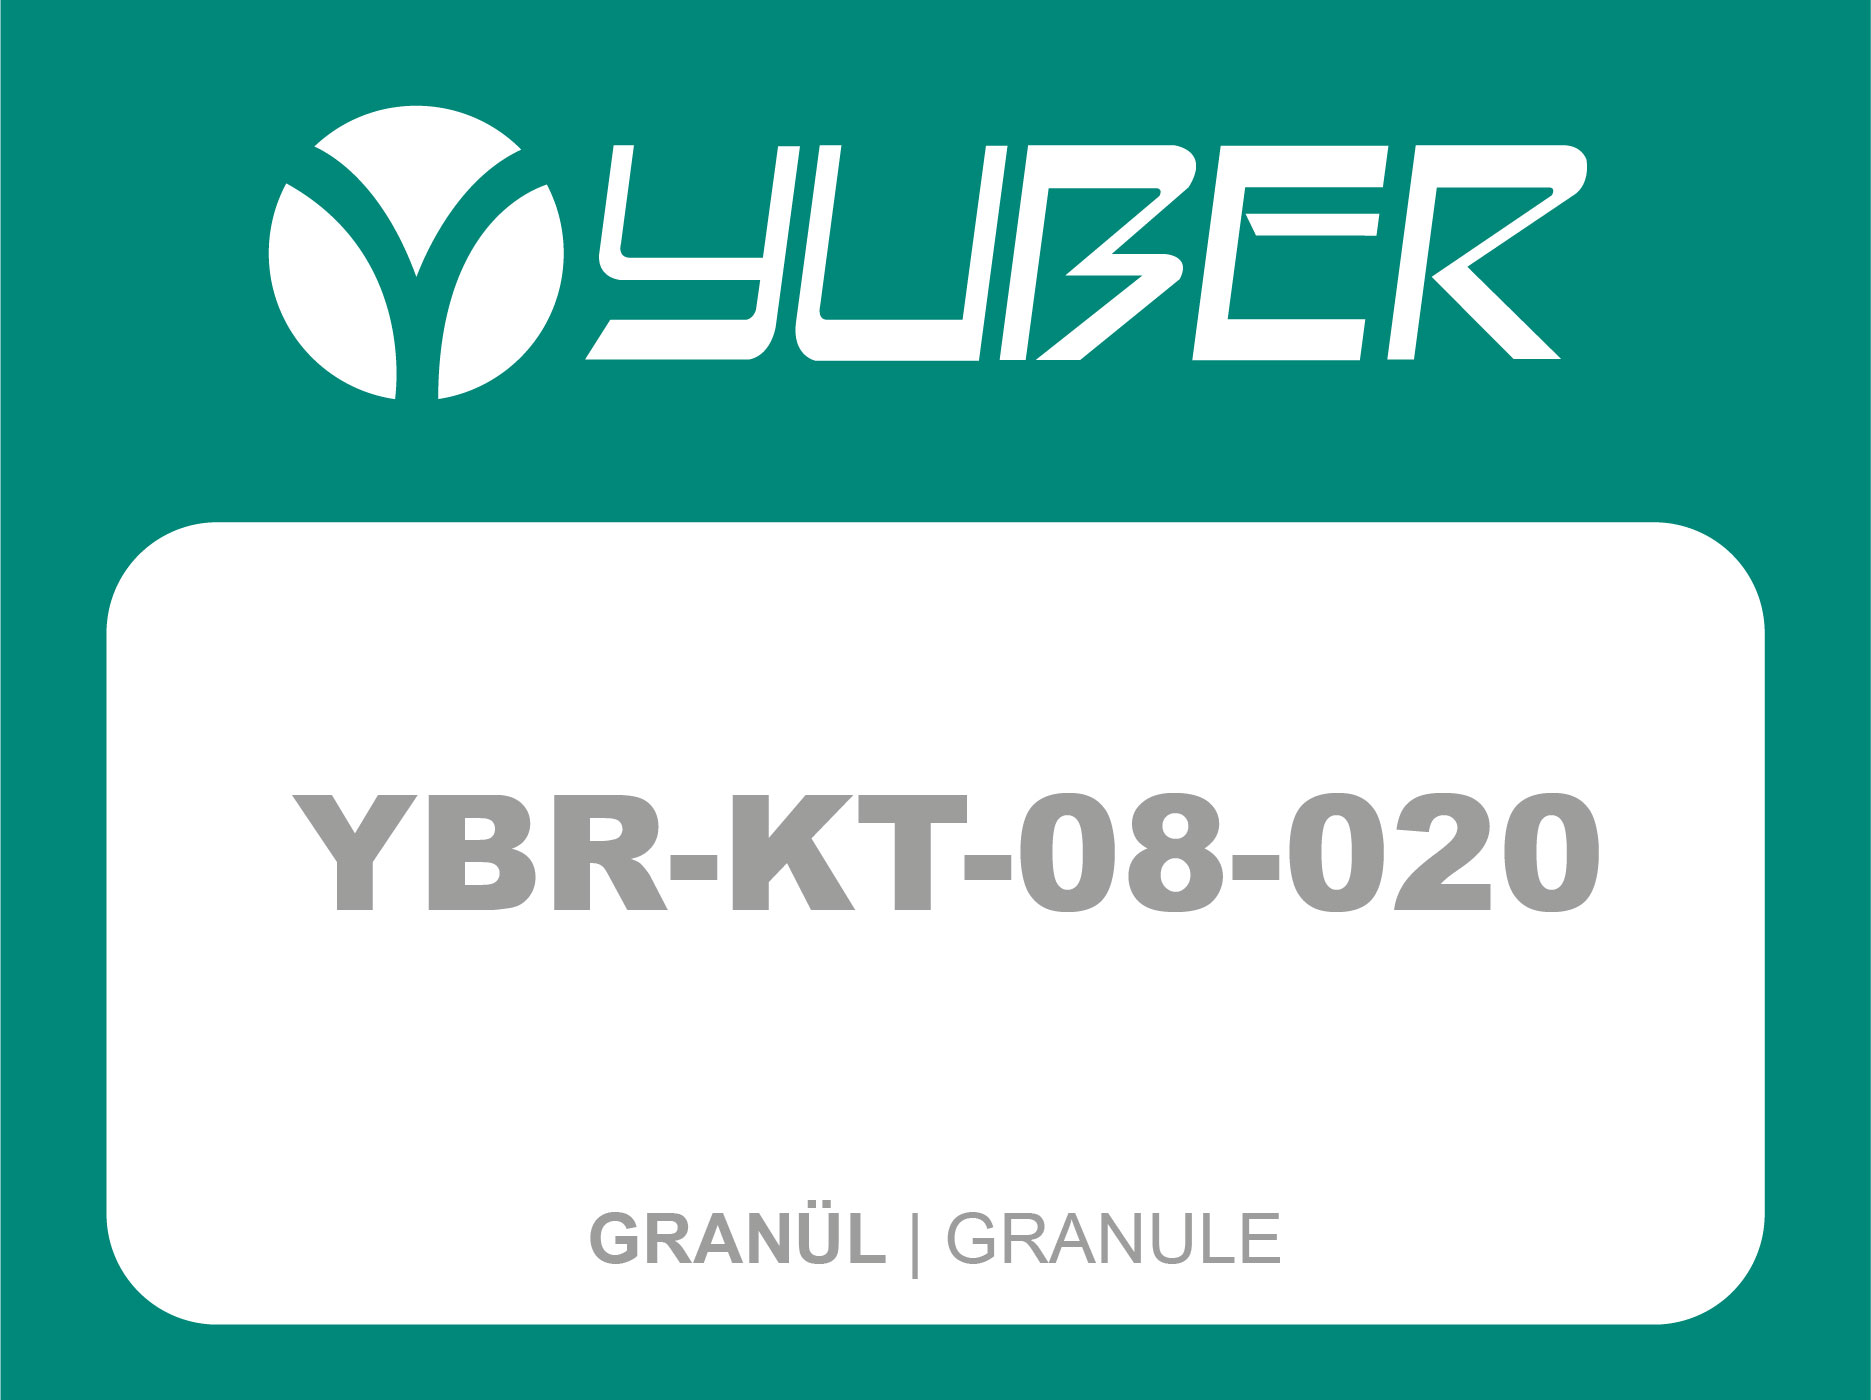 YBR KT 08 020 Granül Yuber Metalurji